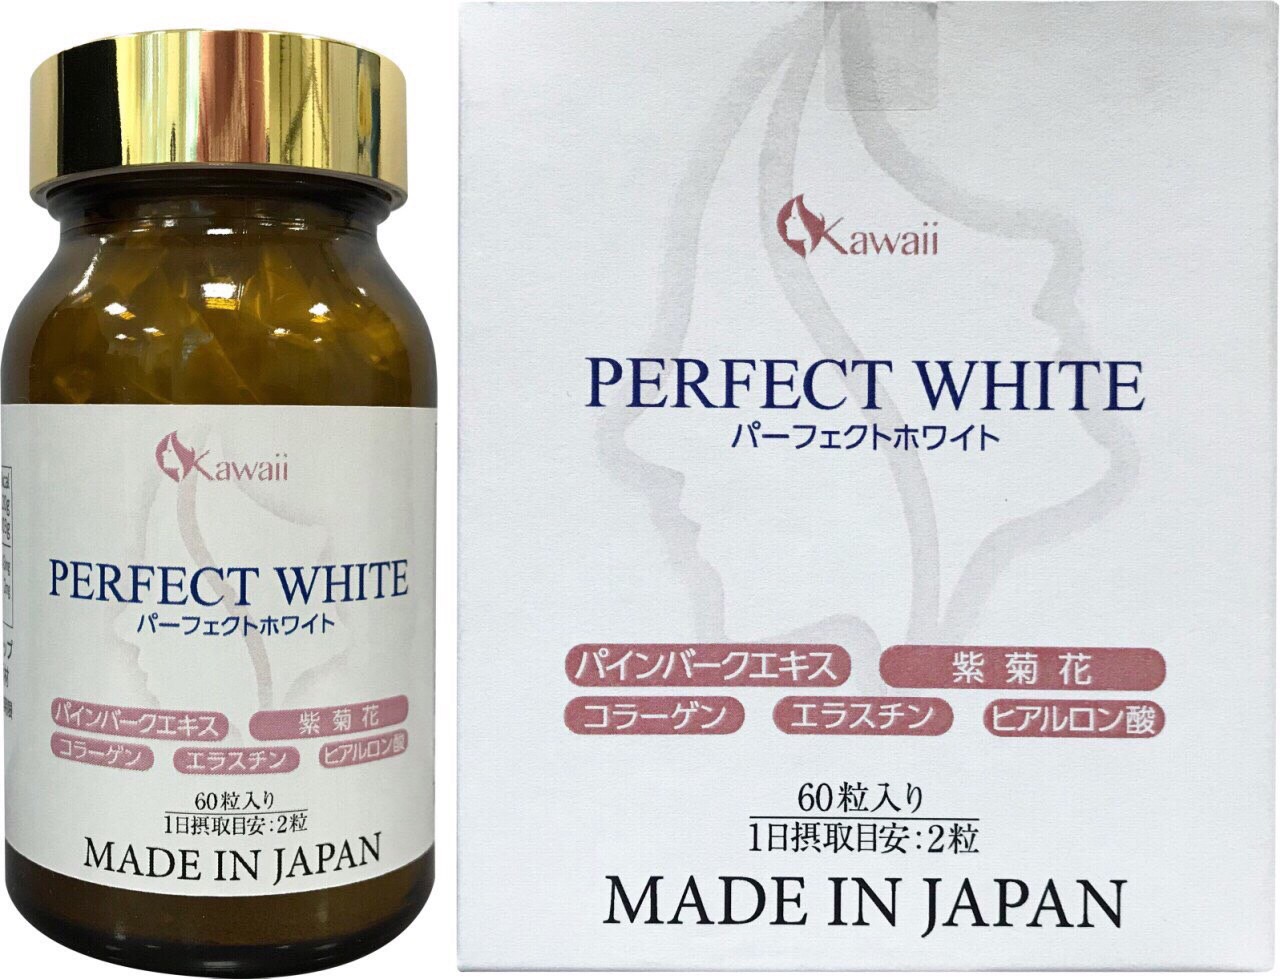 Viên uống Perfect White được tạo ra từ các nguyên liệu thiên nhiên 